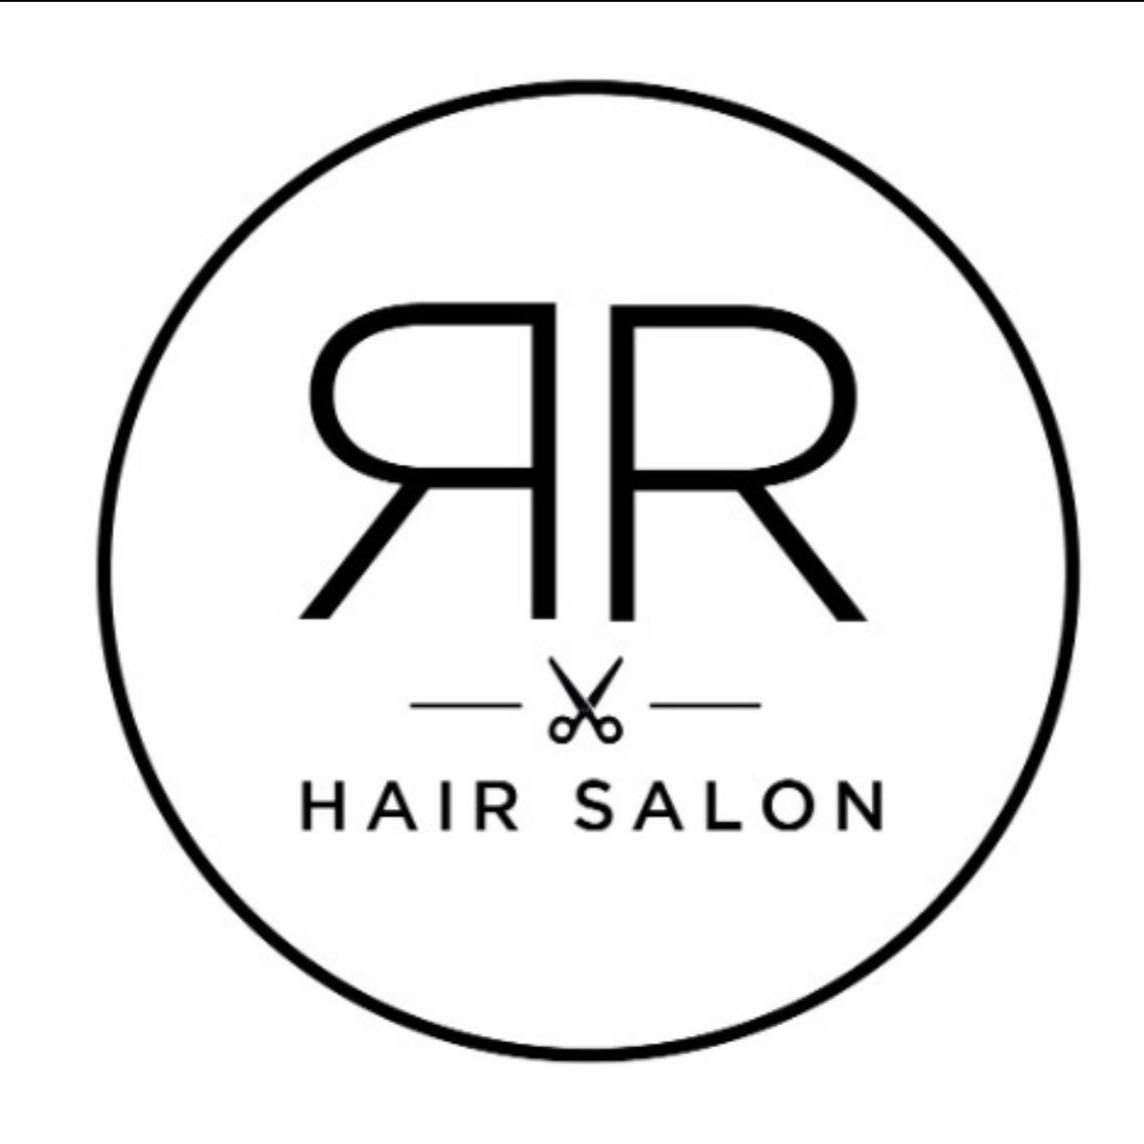 RR Hair Salon, Carrer Sant Isidre n8, Carrer Sant Isidre, 43540, La Ràpita